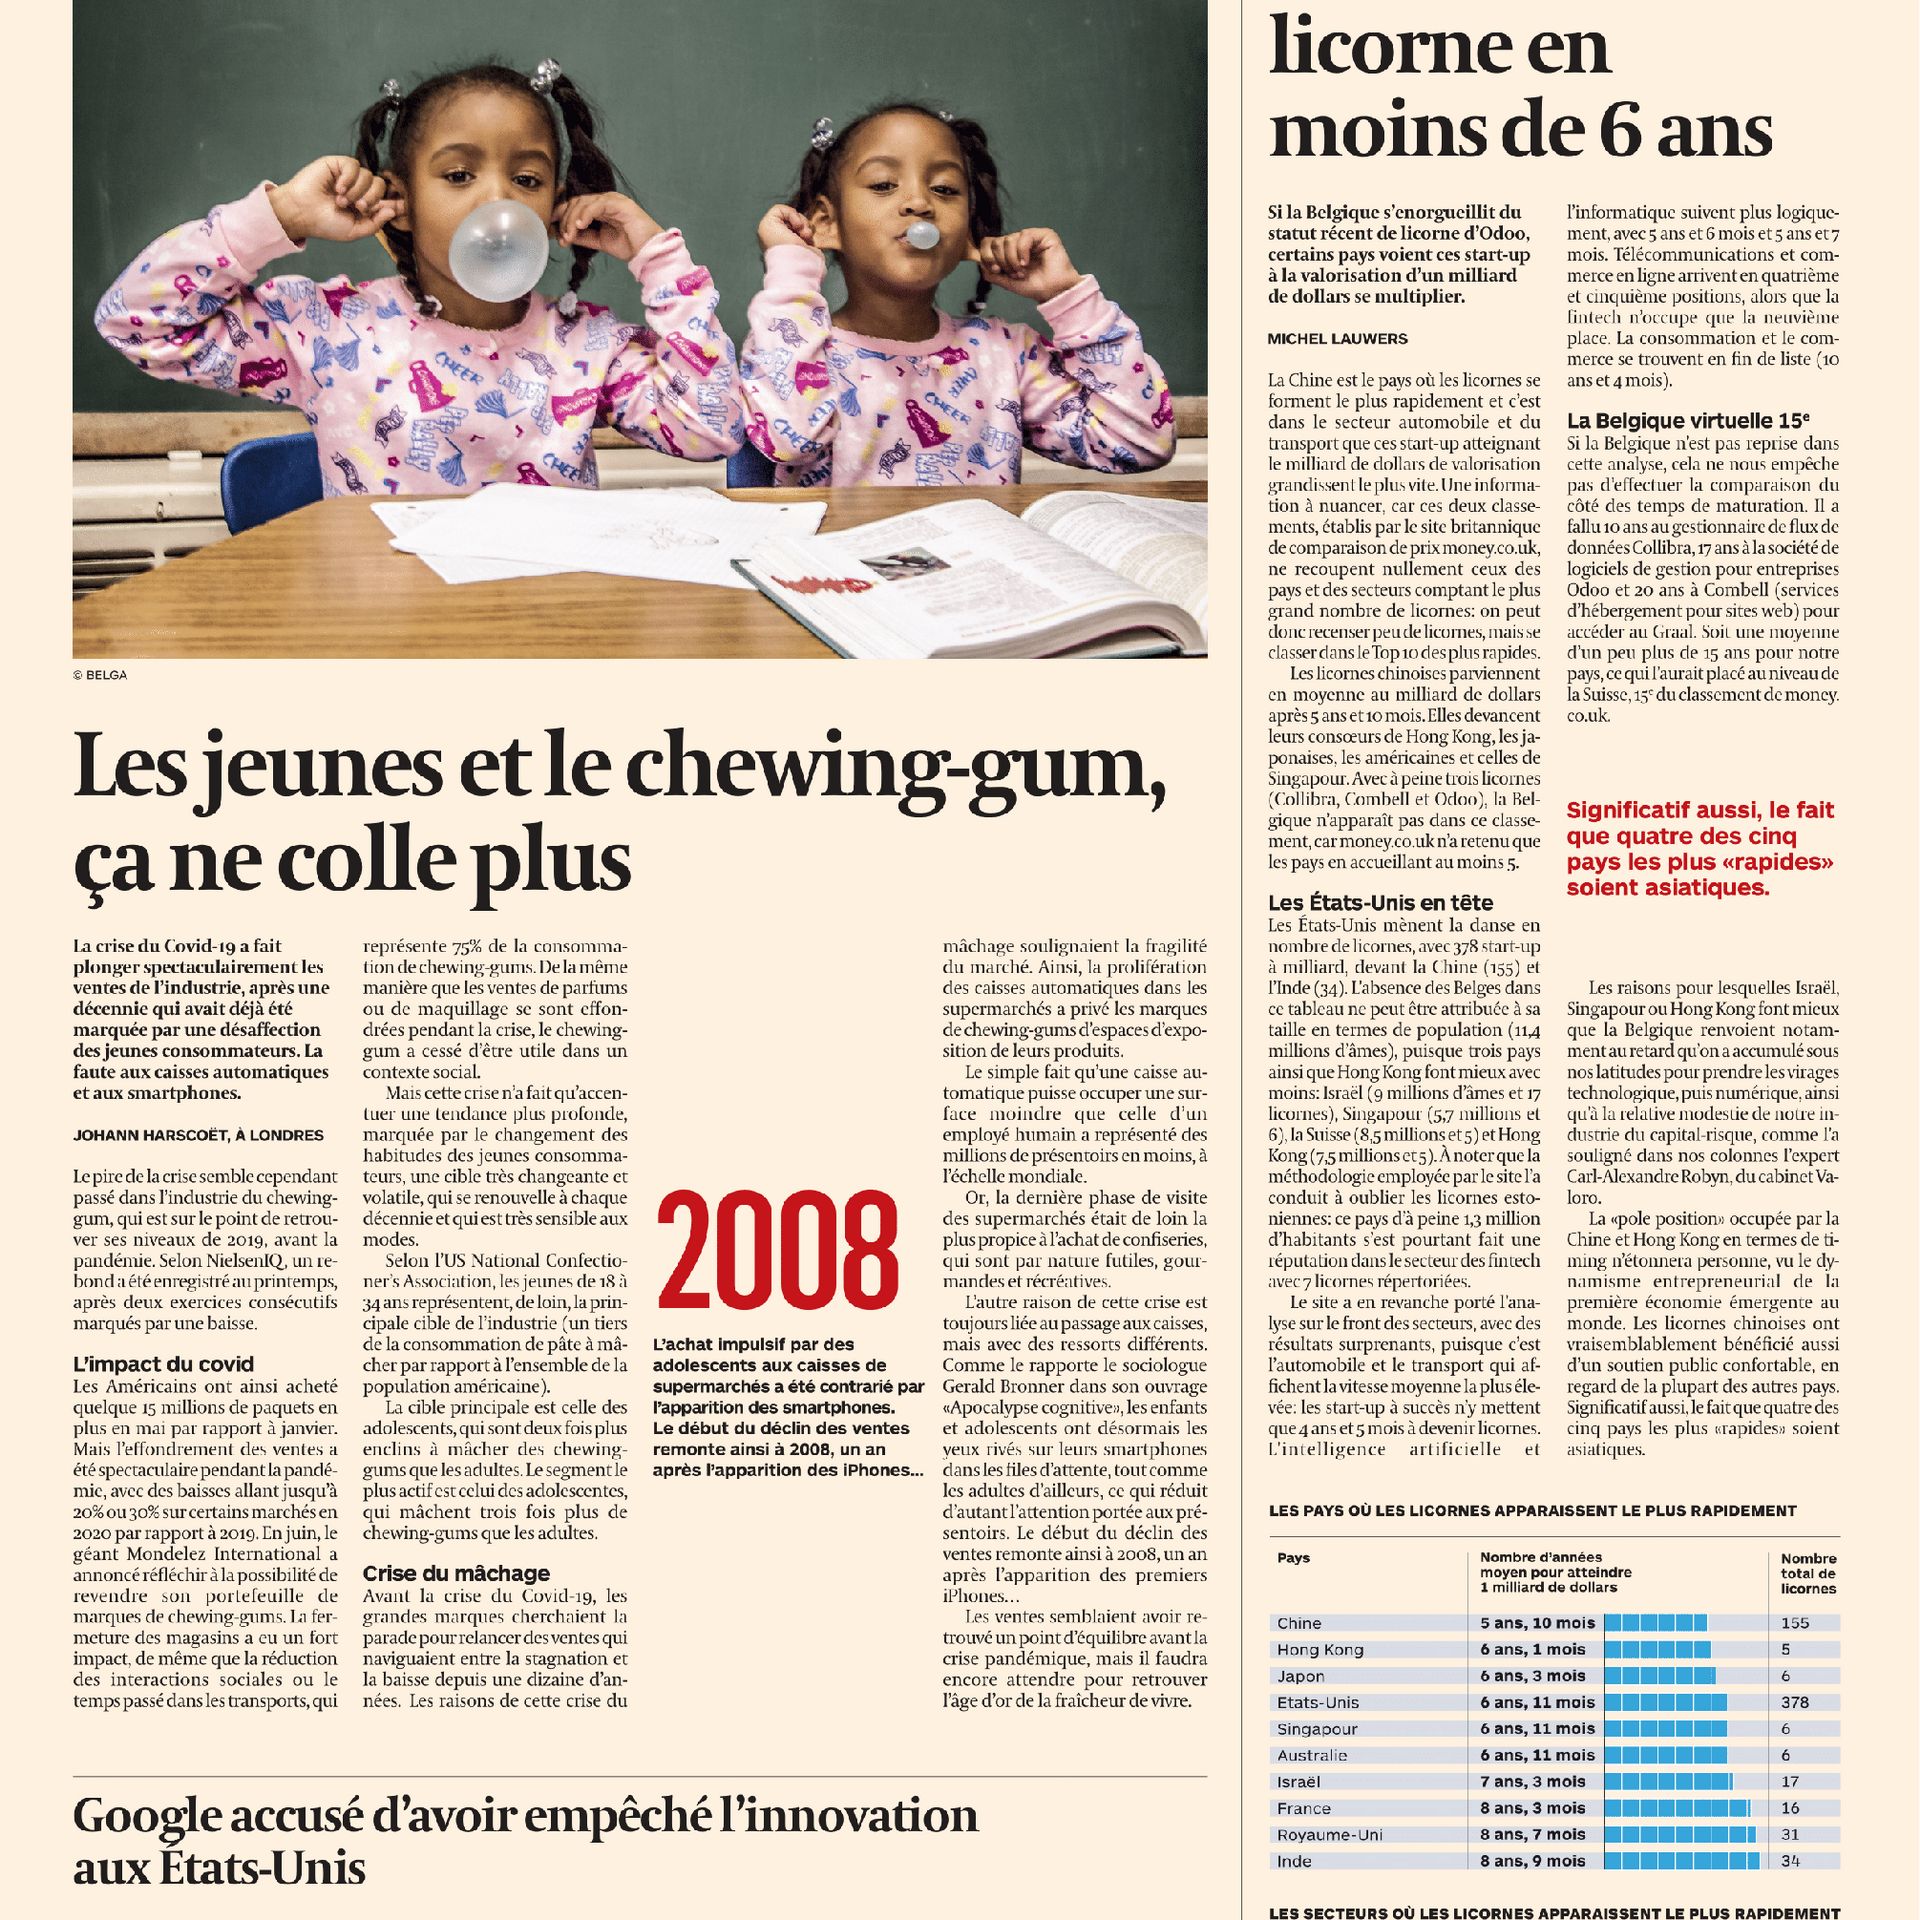 Les Français de moins en moins adeptes du chewing-gum – L'Express